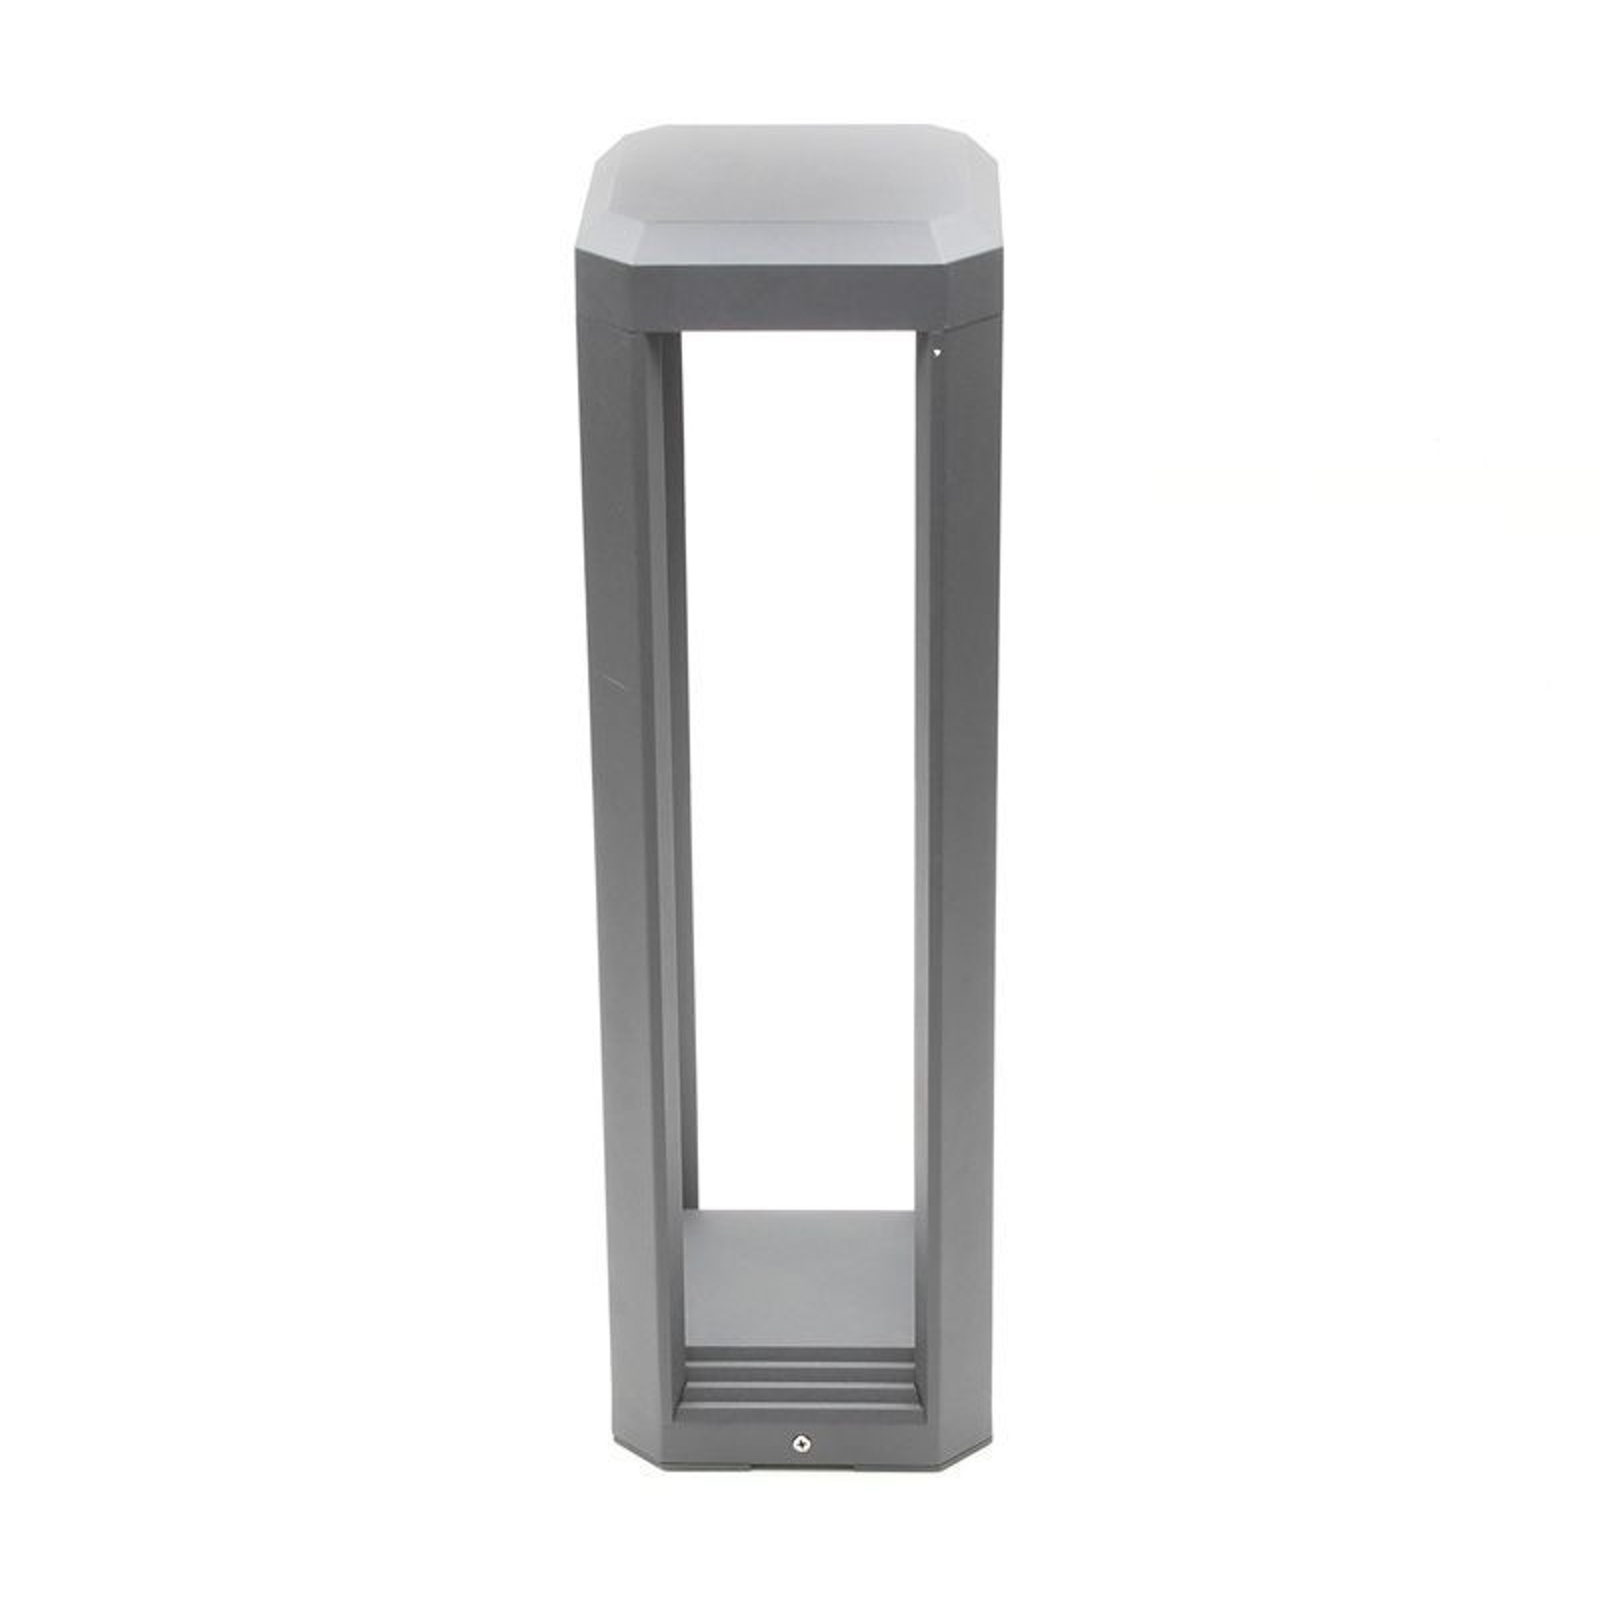 LED soklové světlo Rubkat, šedá, výška 50 cm